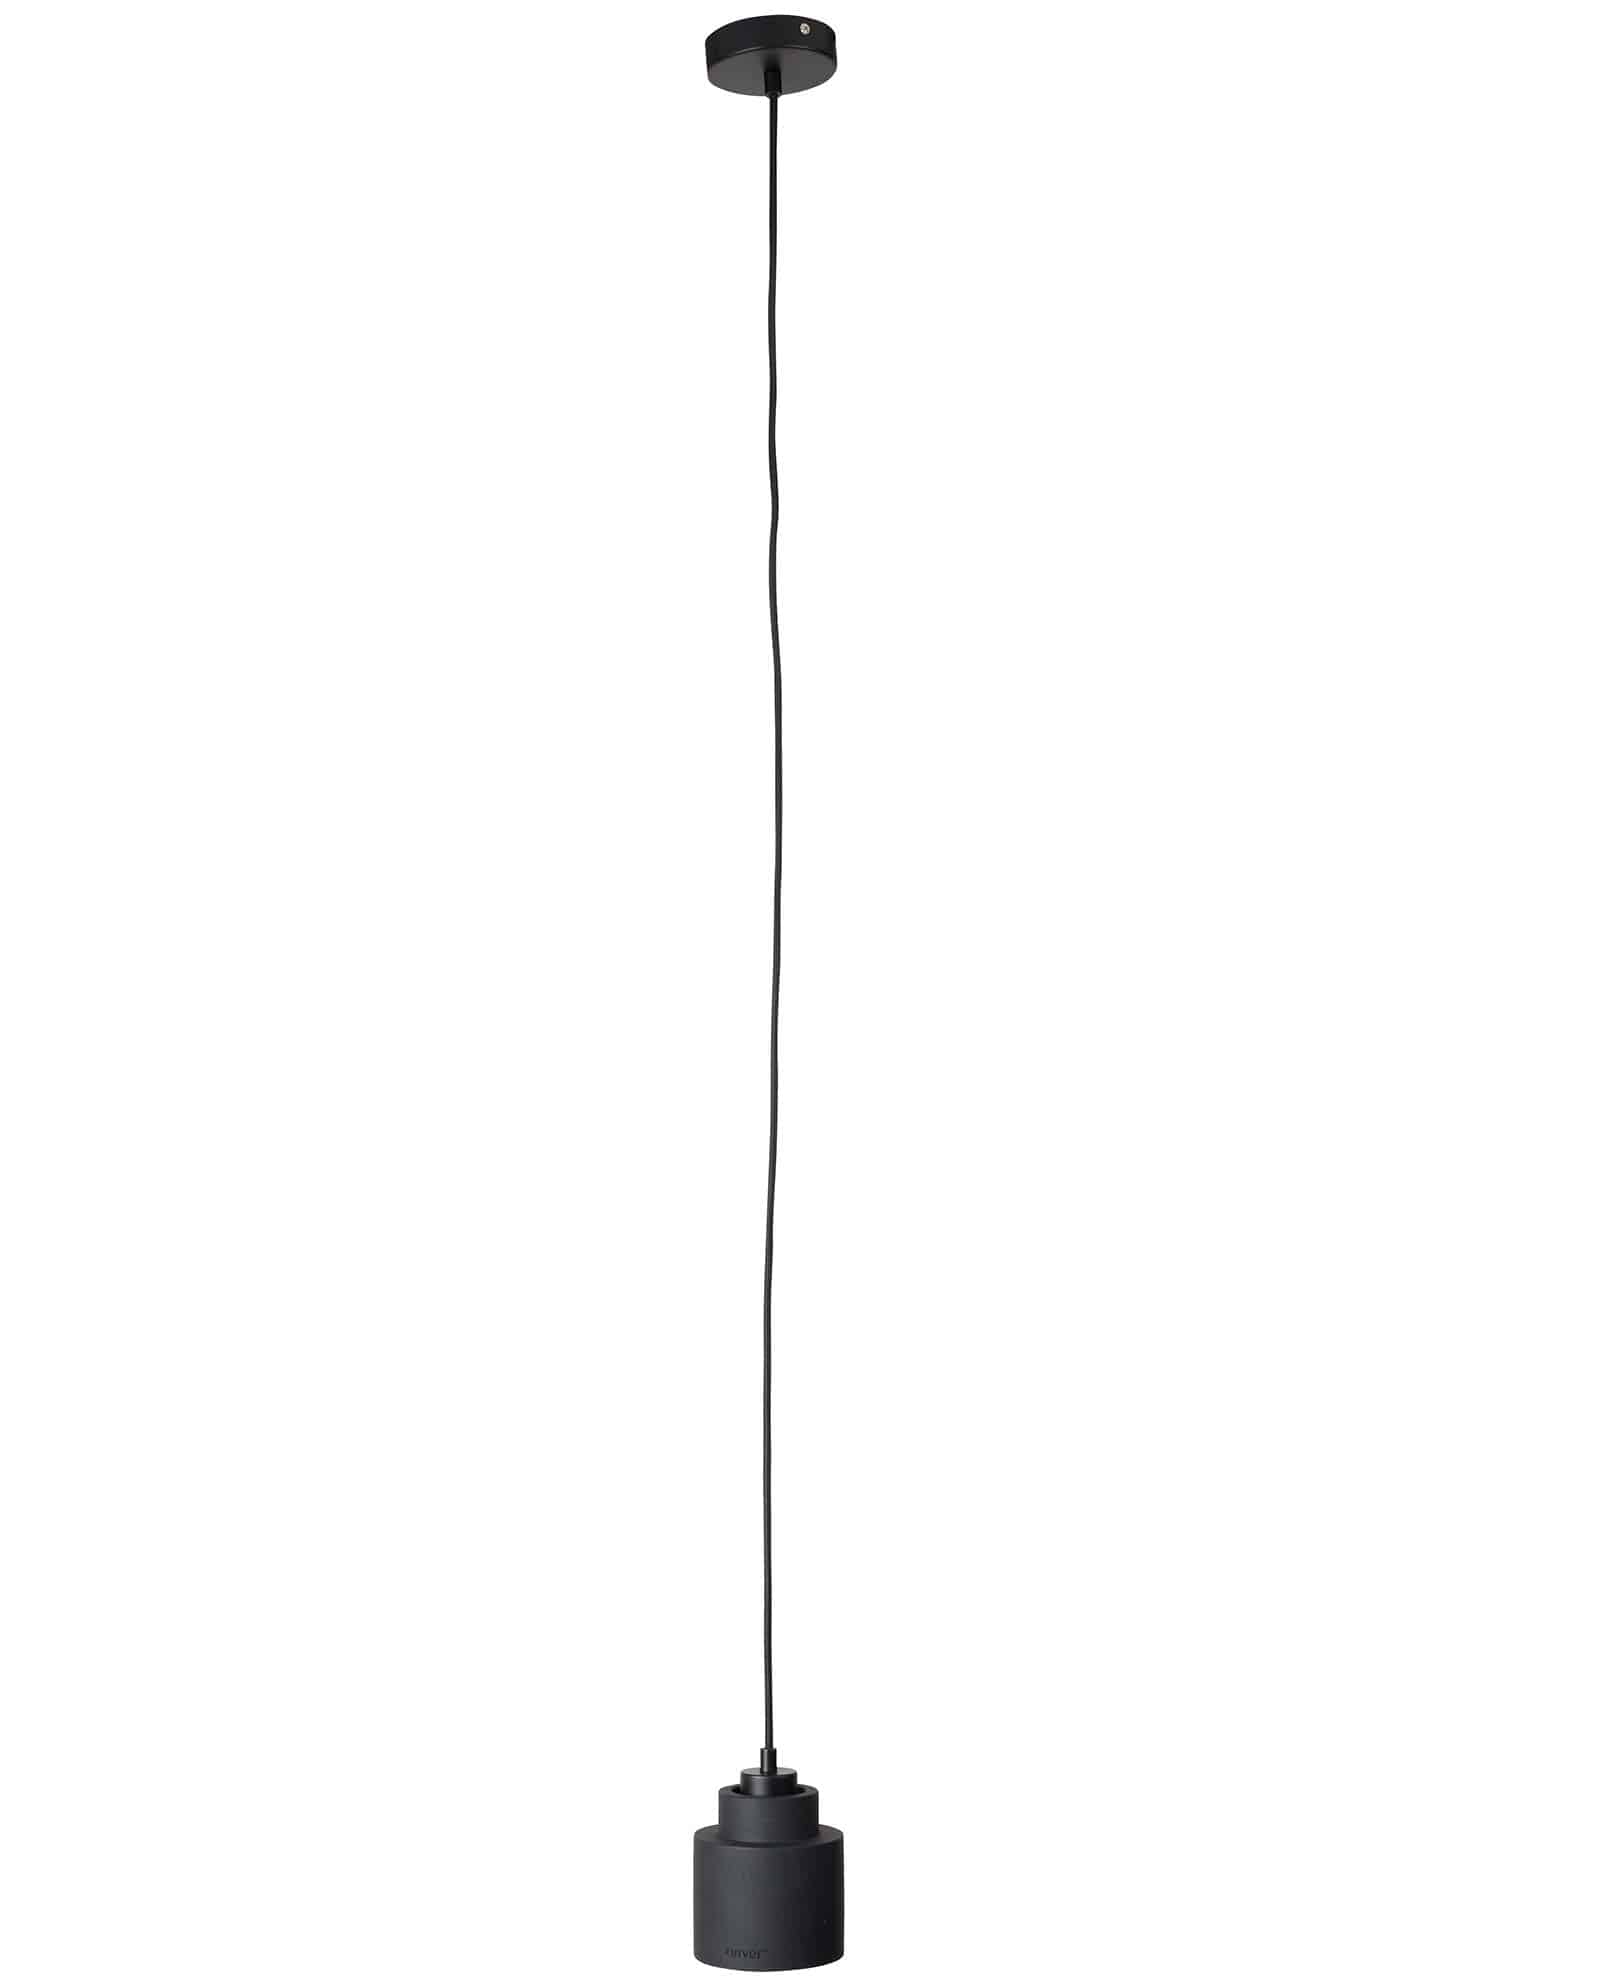 echo Afkorten Dijk Left hanglamp by Zuiver - Designshopp